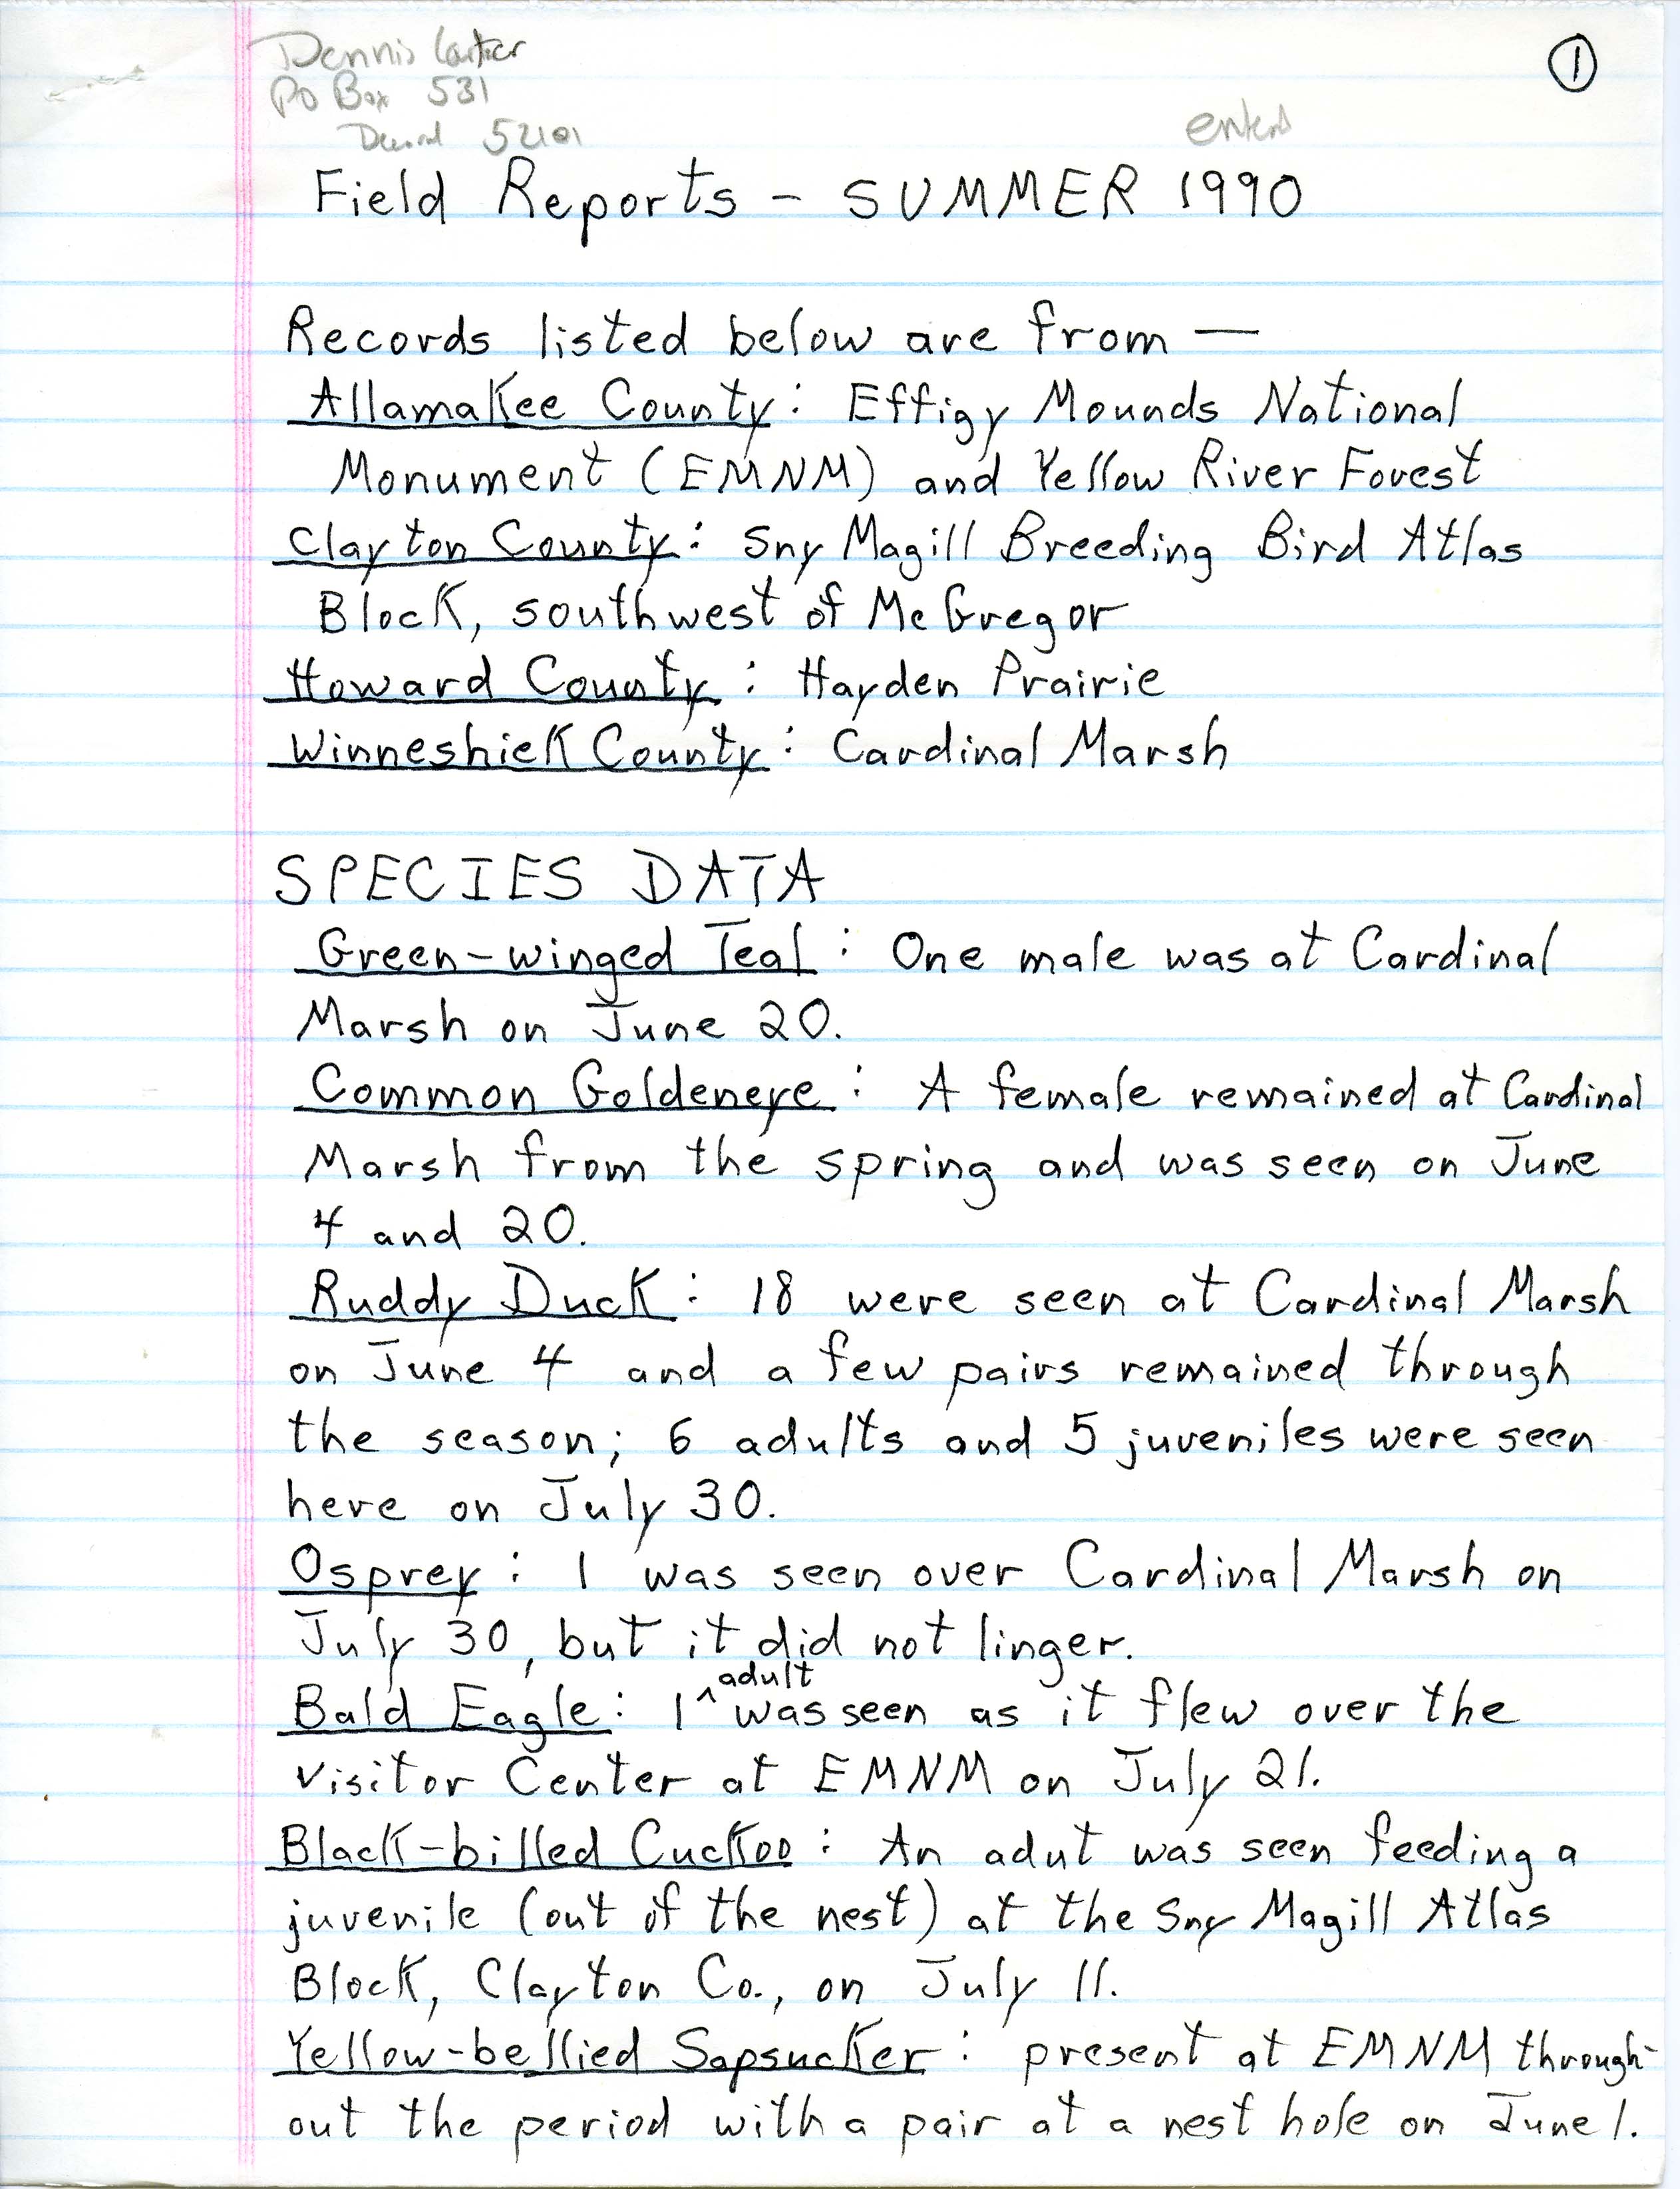 Field reports, Dennis Carter, summer 1989